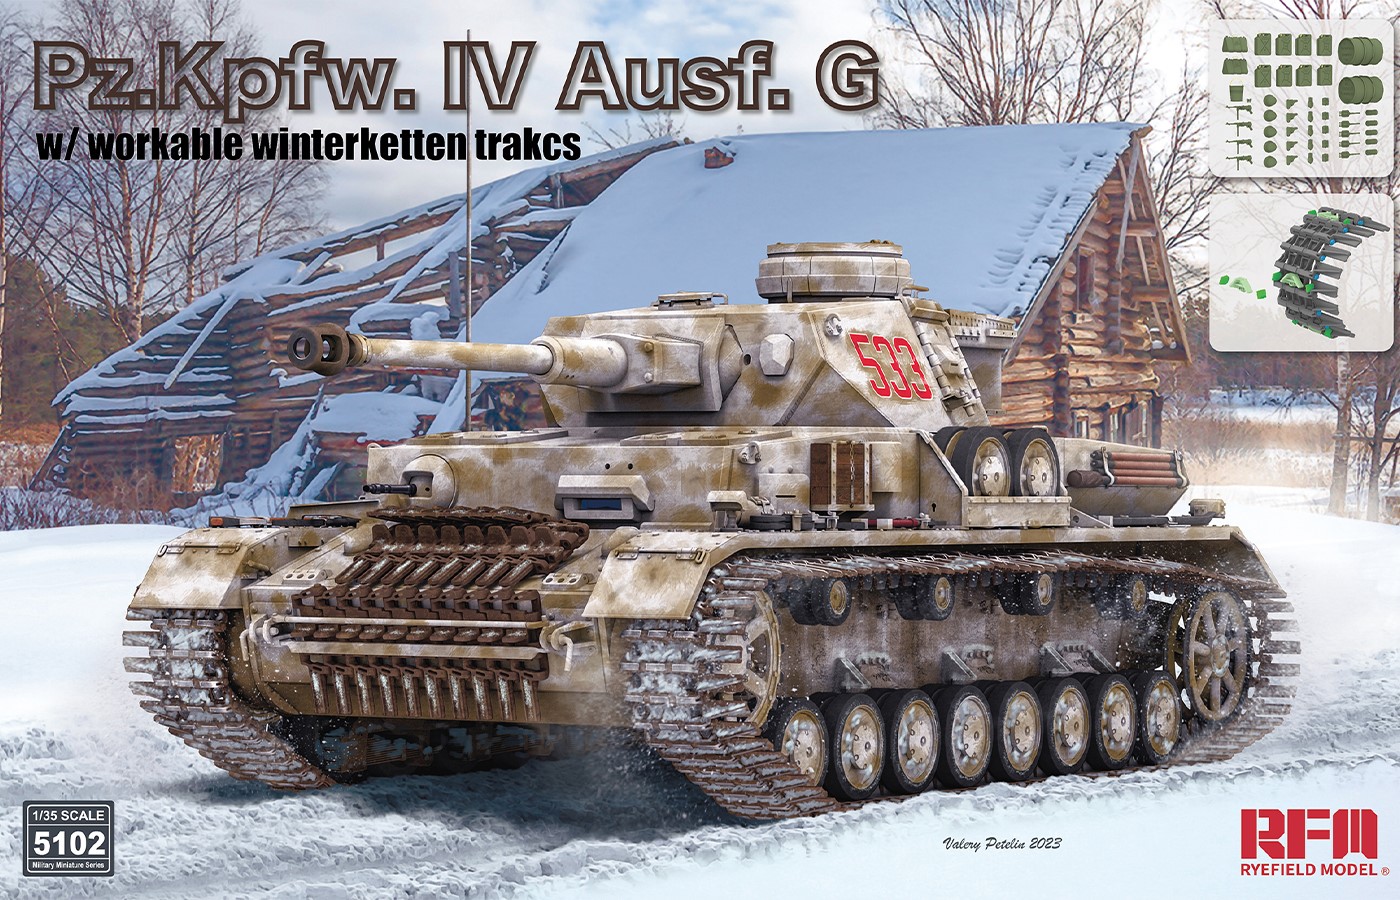 Fotografie 1/35 Pz.Kpfw. IV Ausf. G w/ workable winterketten trakcs